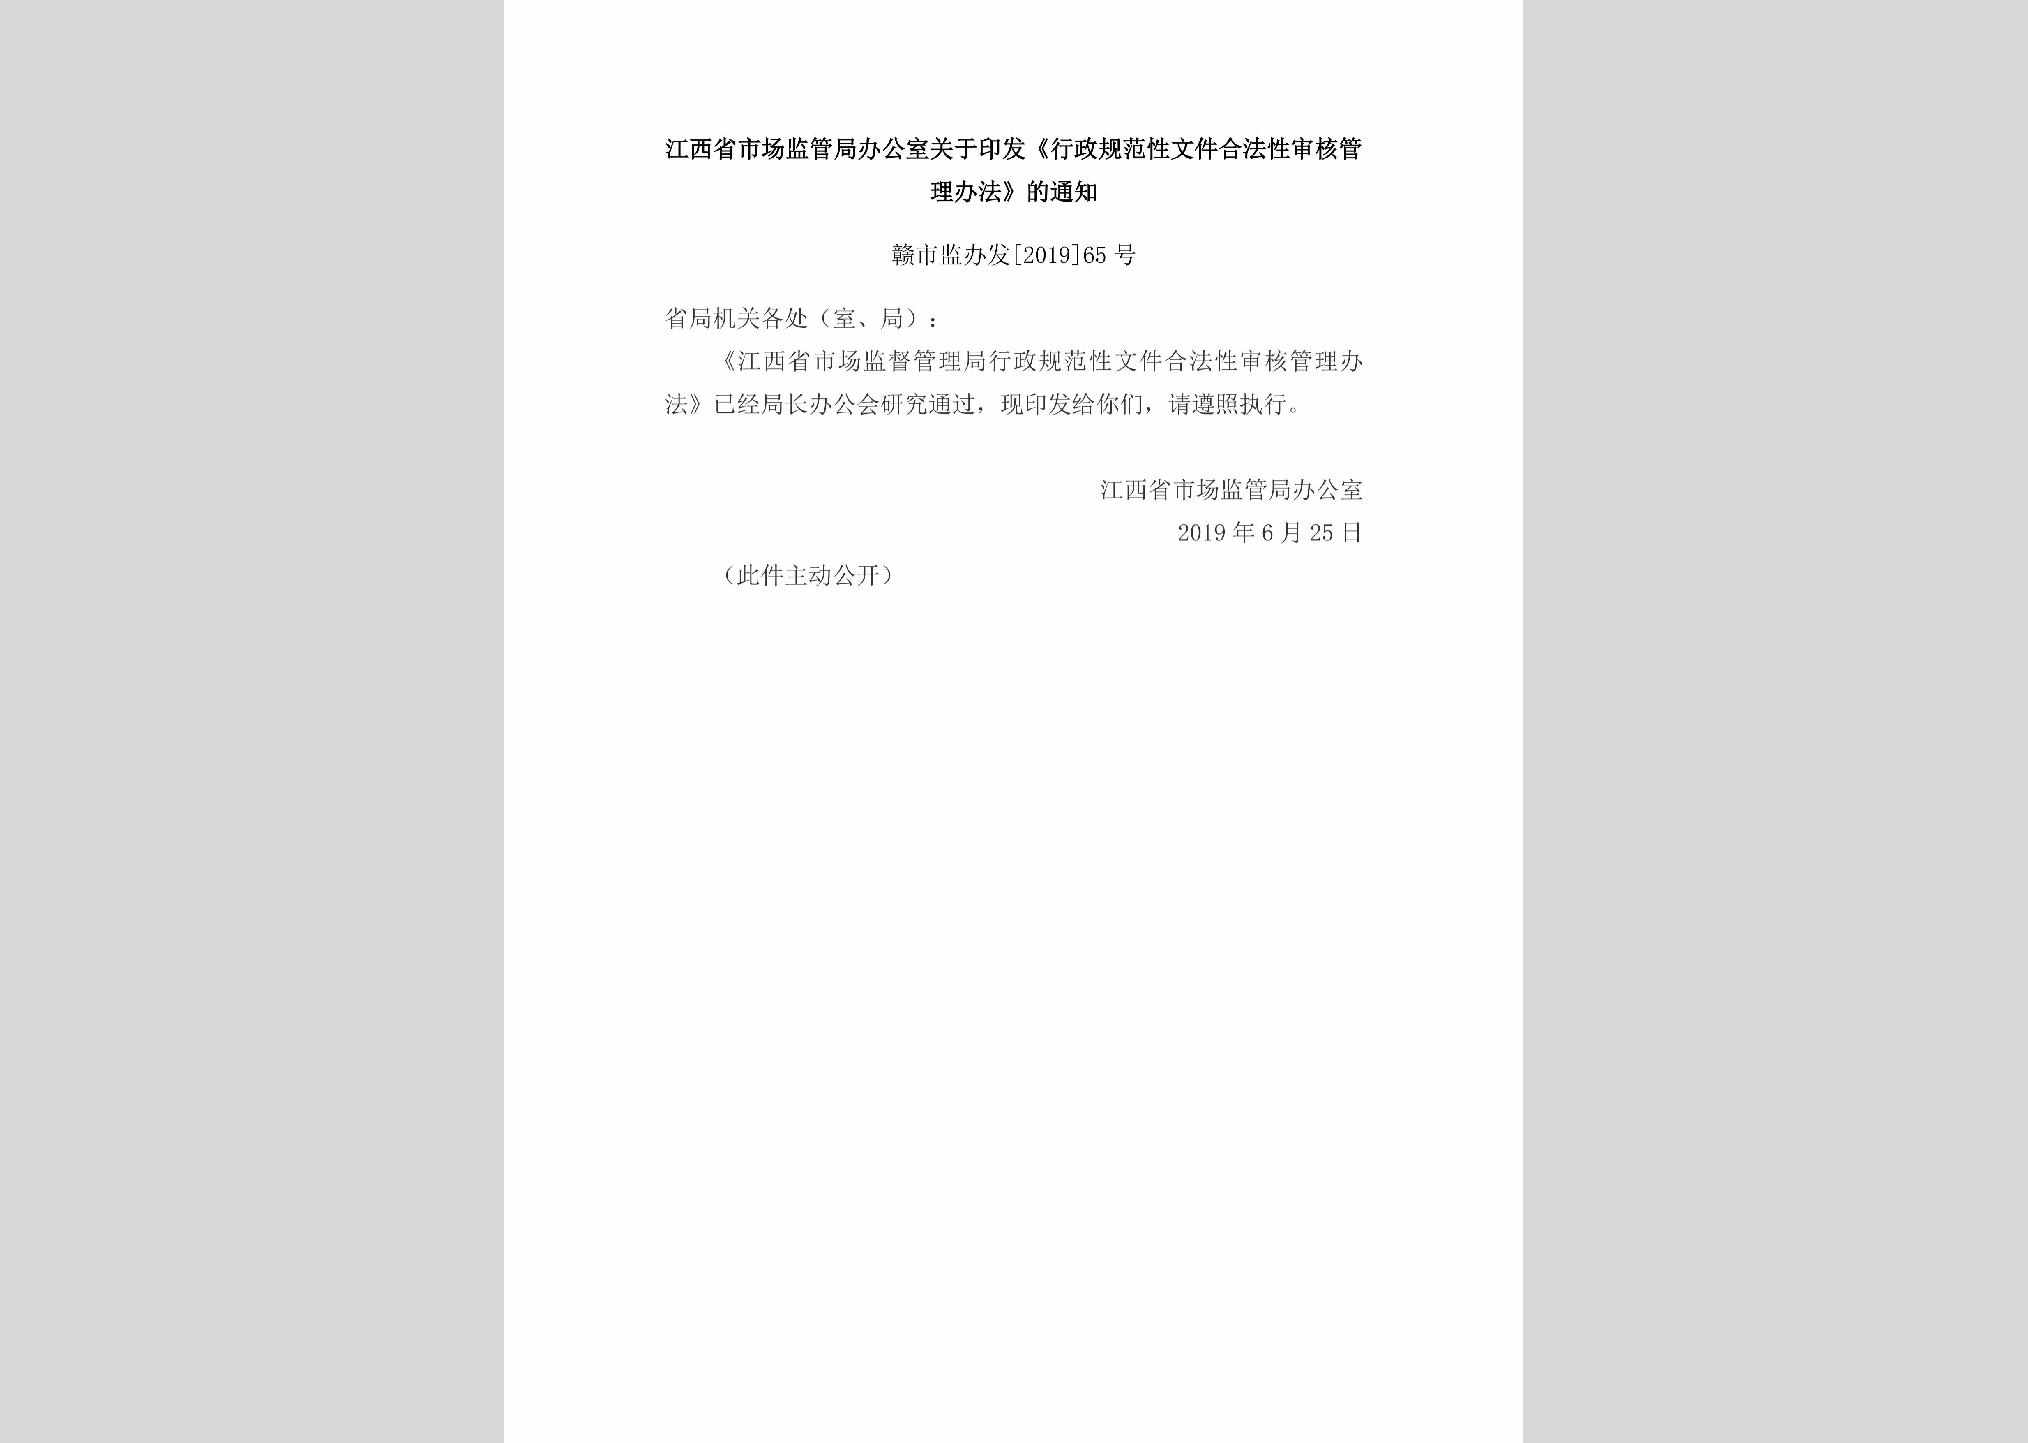 赣市监办发[2019]65号：江西省市场监管局办公室关于印发《行政规范性文件合法性审核管理办法》的通知